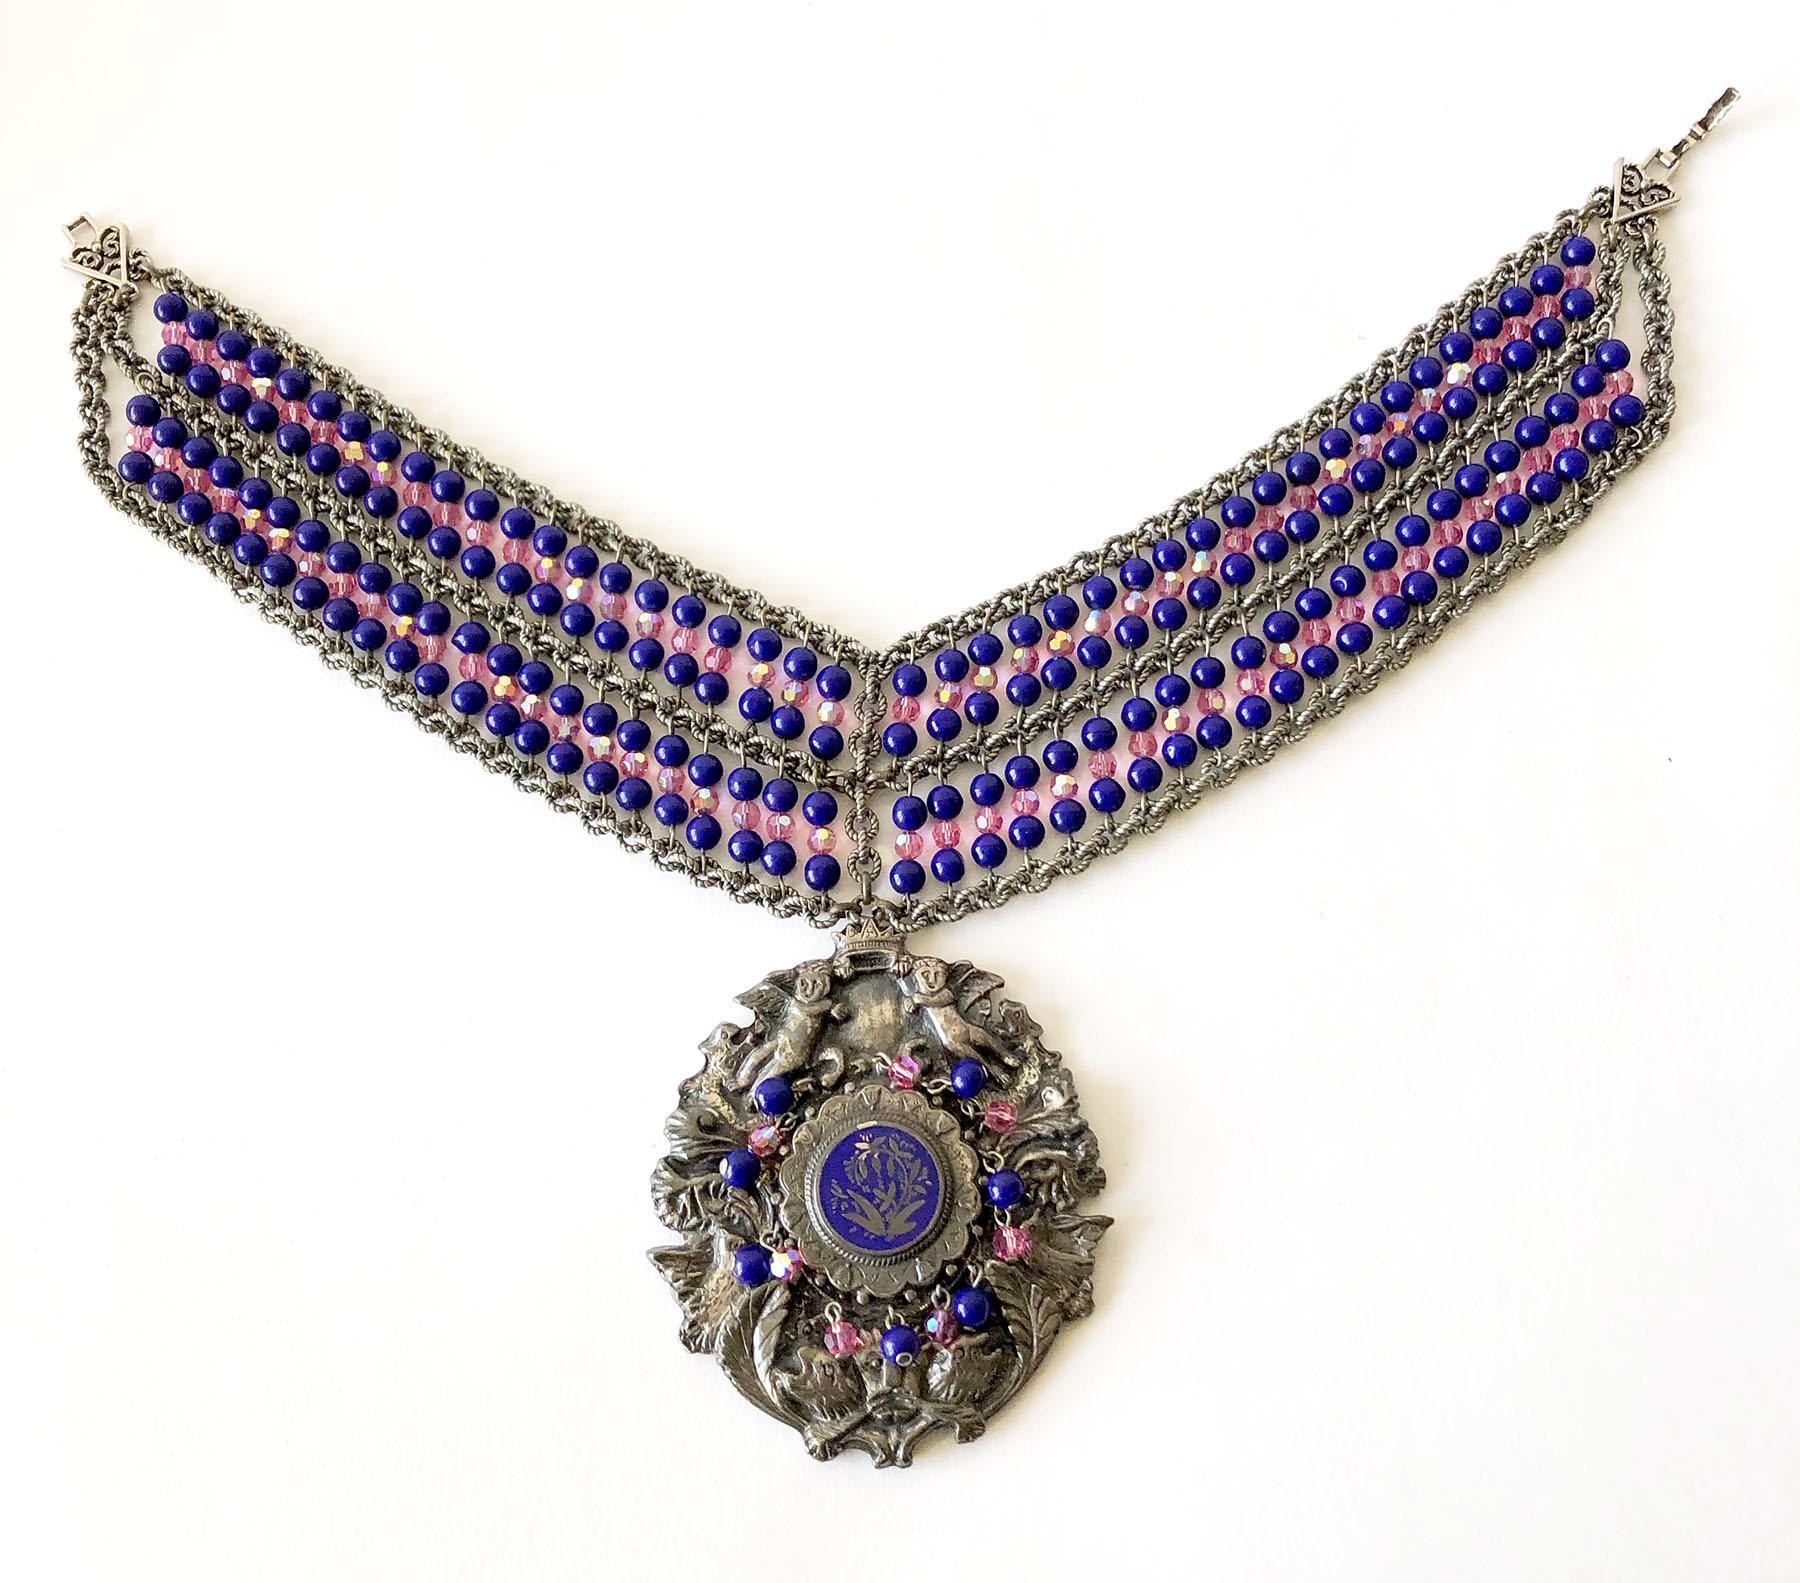 Collier unique, fait à la main, de style bannière vintage des années 1980, avec un grand médaillon en perles de verre embelli, conçu et créé par Mark Merrill de Détroit, Michigan.  La partie collier mesure 14